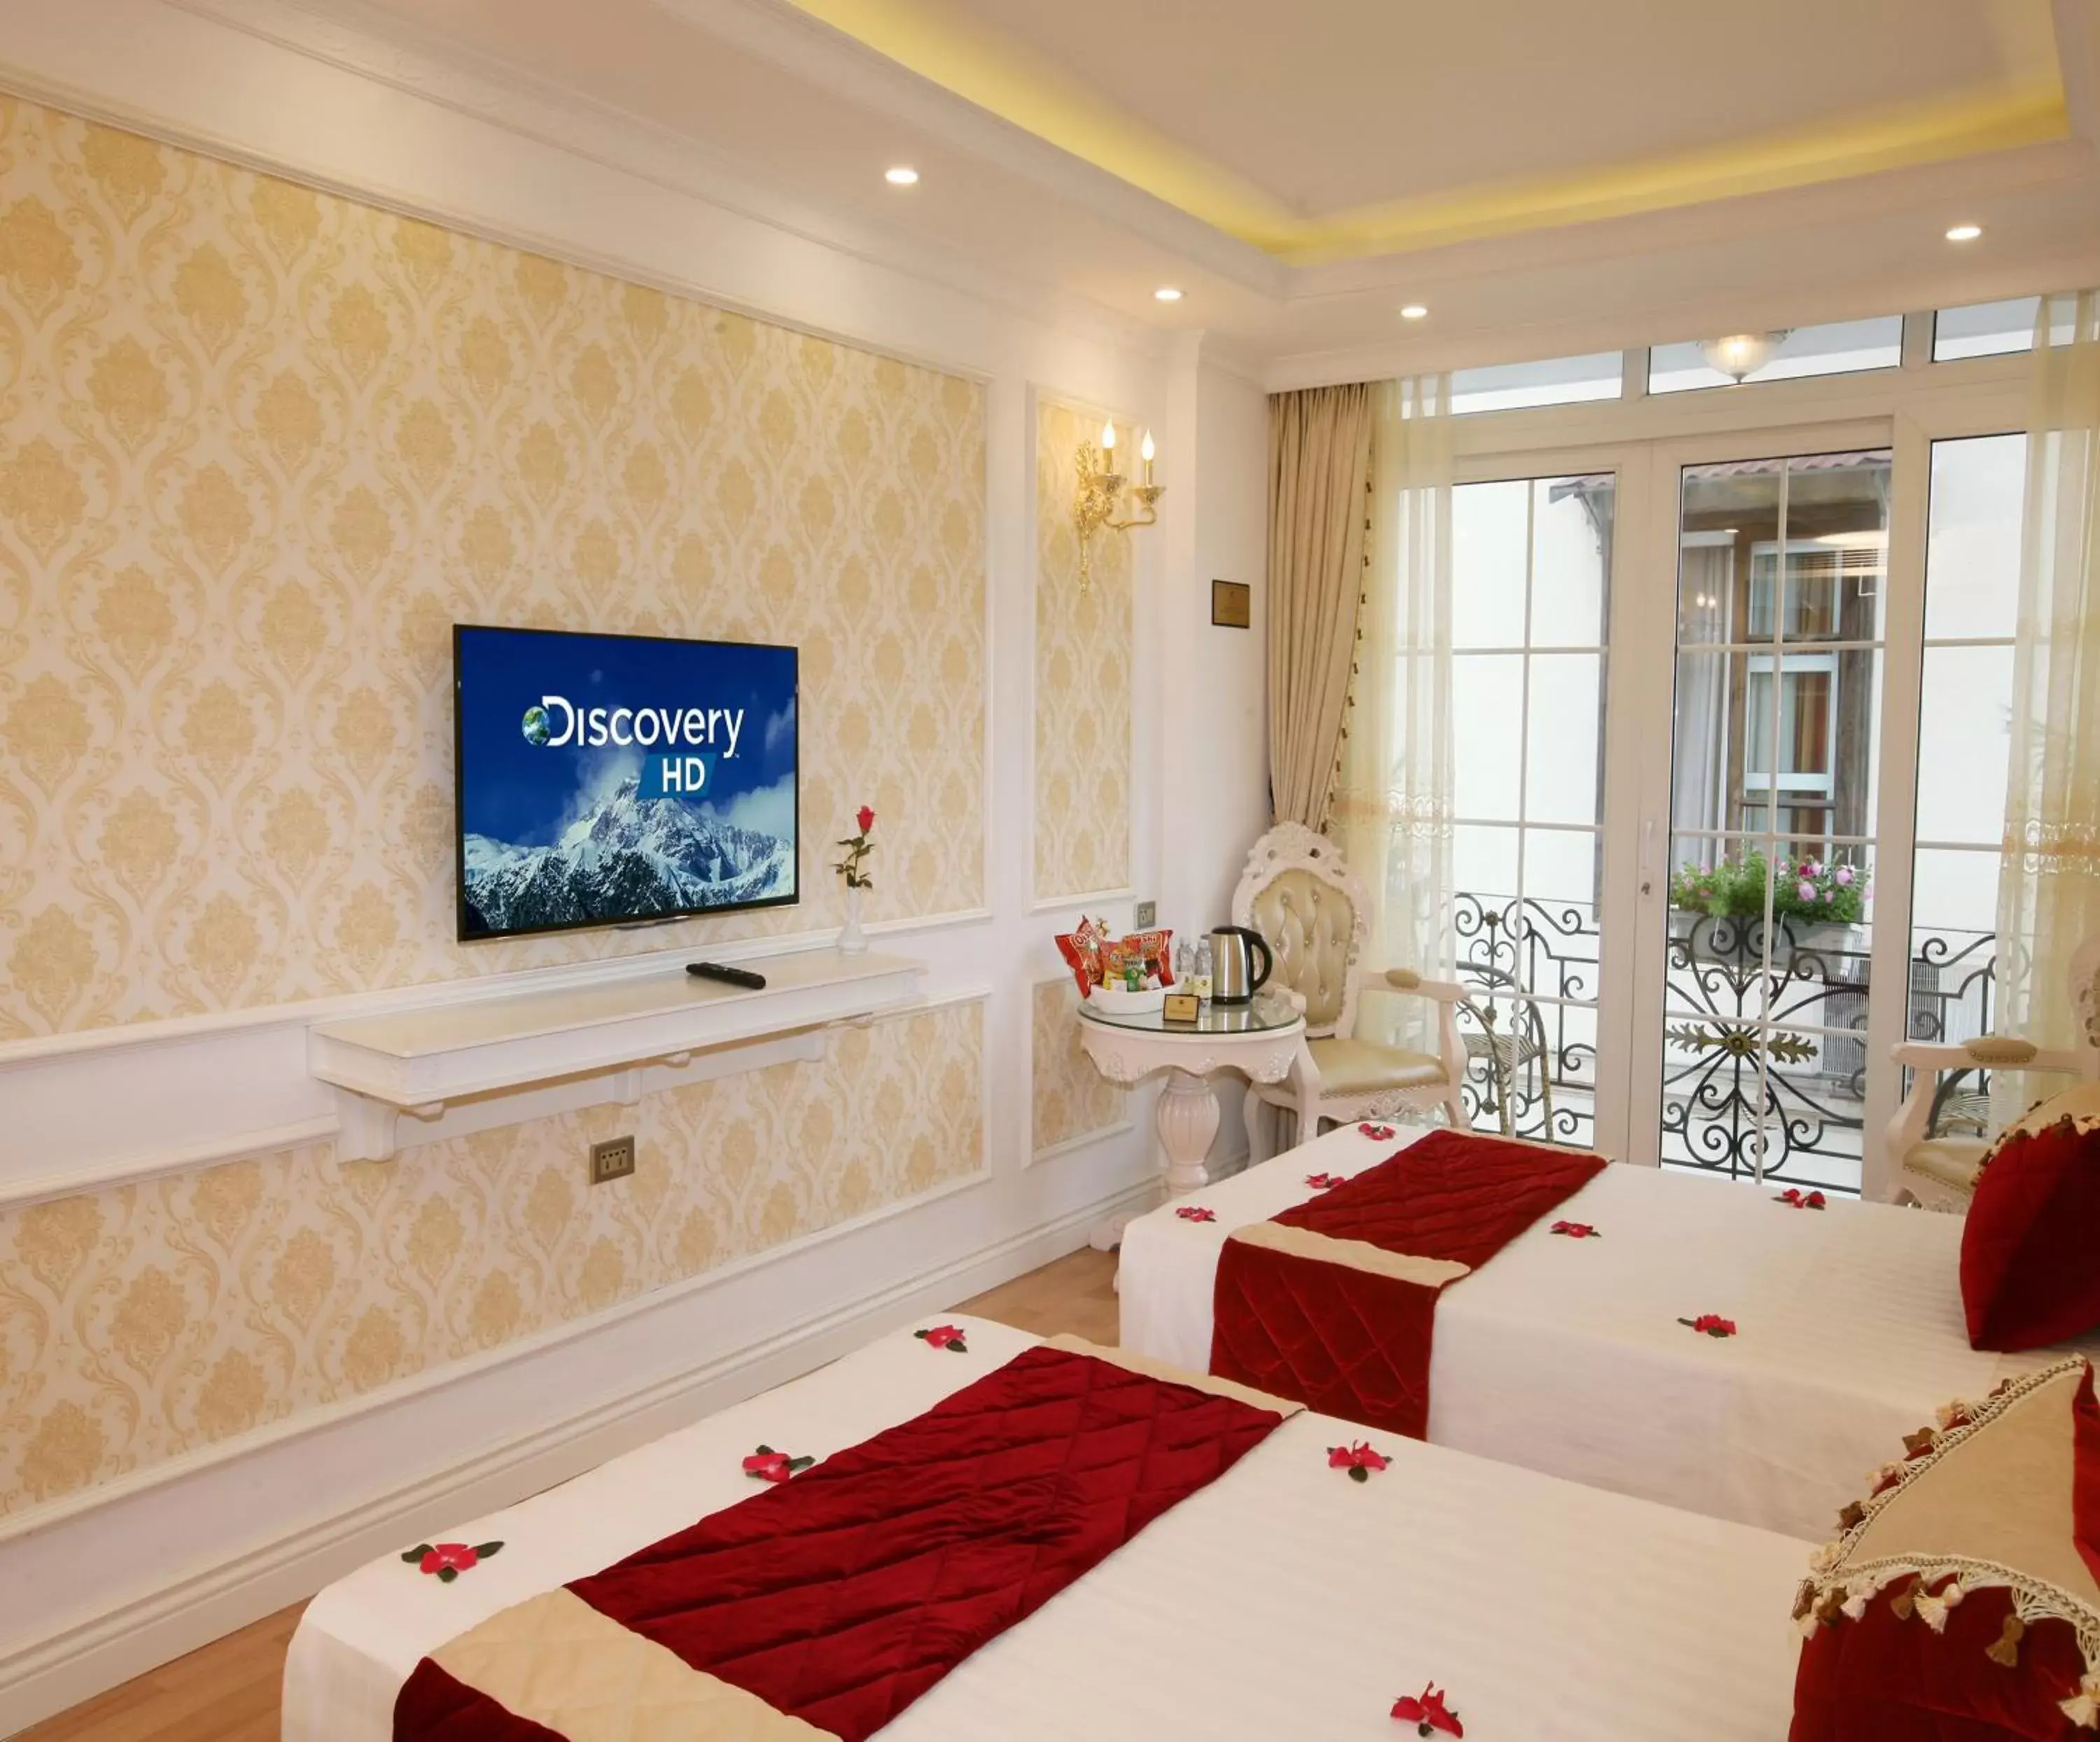 Bedroom, TV/Entertainment Center in Hanoi Hotel Royal